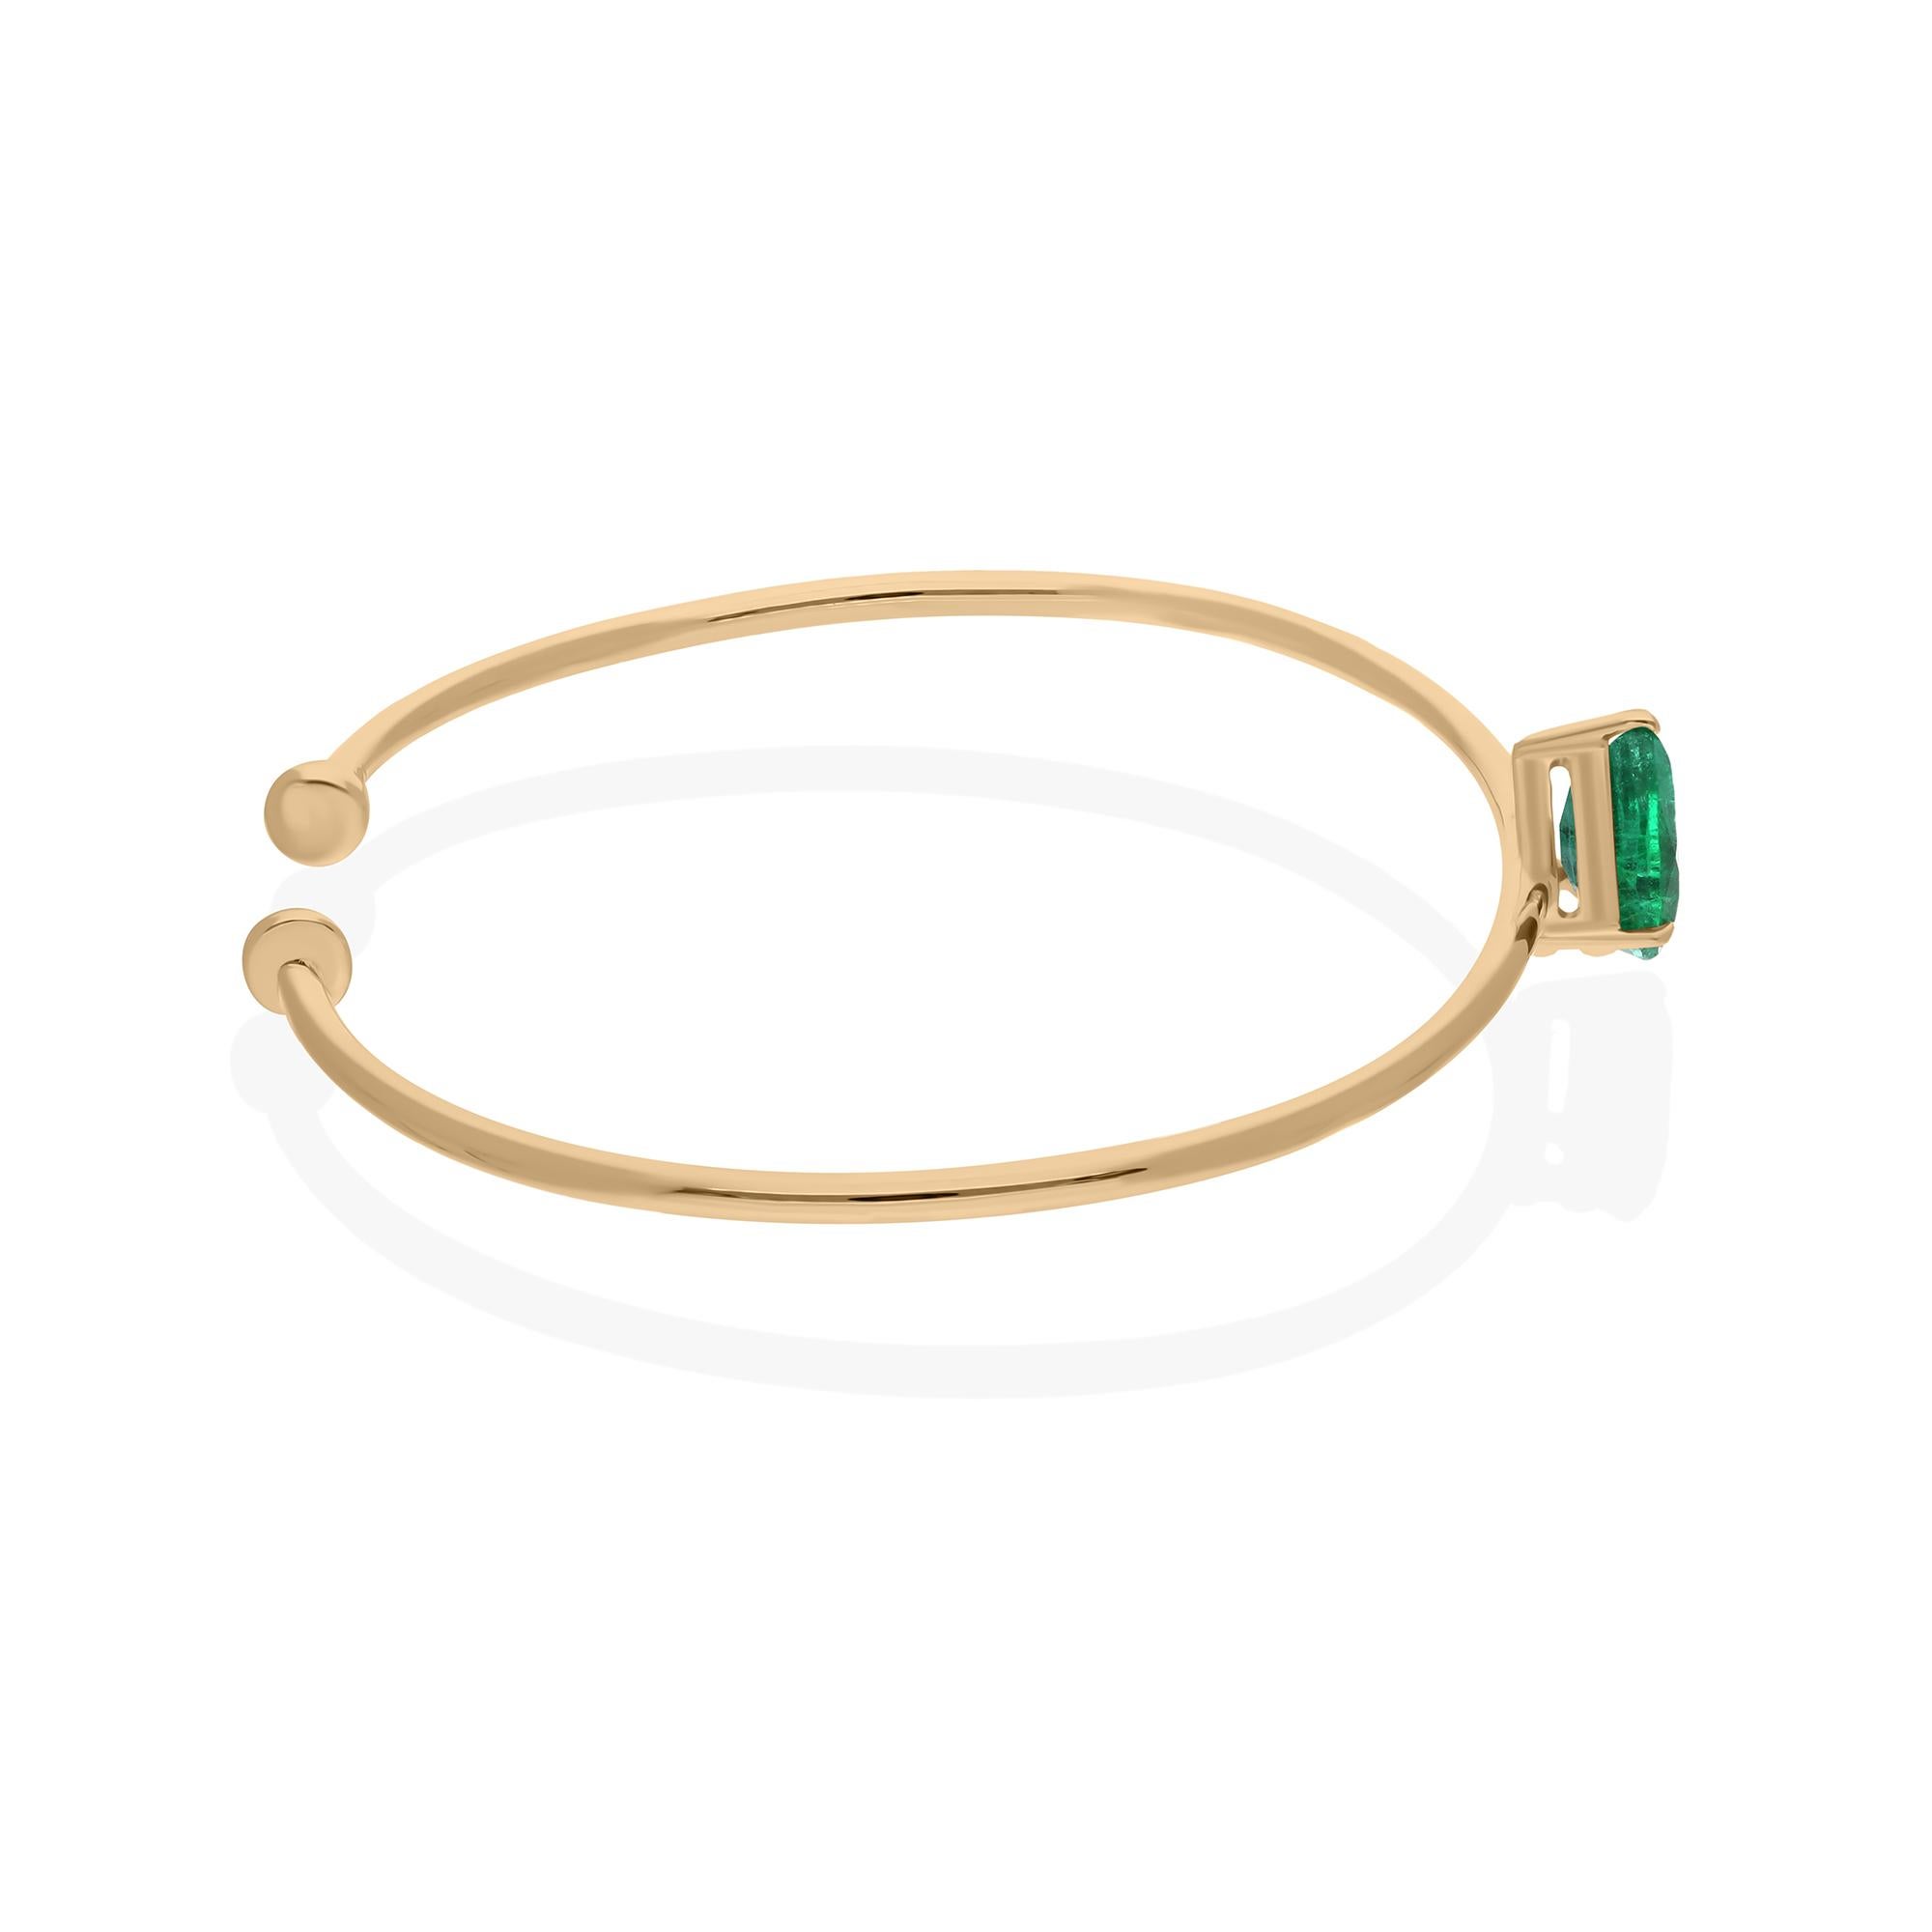 In der Mitte des Rings glänzt ein atemberaubender birnenförmiger sambischer Smaragd, der aufgrund seines satten Grüntons und seiner außergewöhnlichen Klarheit sorgfältig ausgewählt wurde. Smaragde aus Sambia sind für ihre leuchtende Farbe und